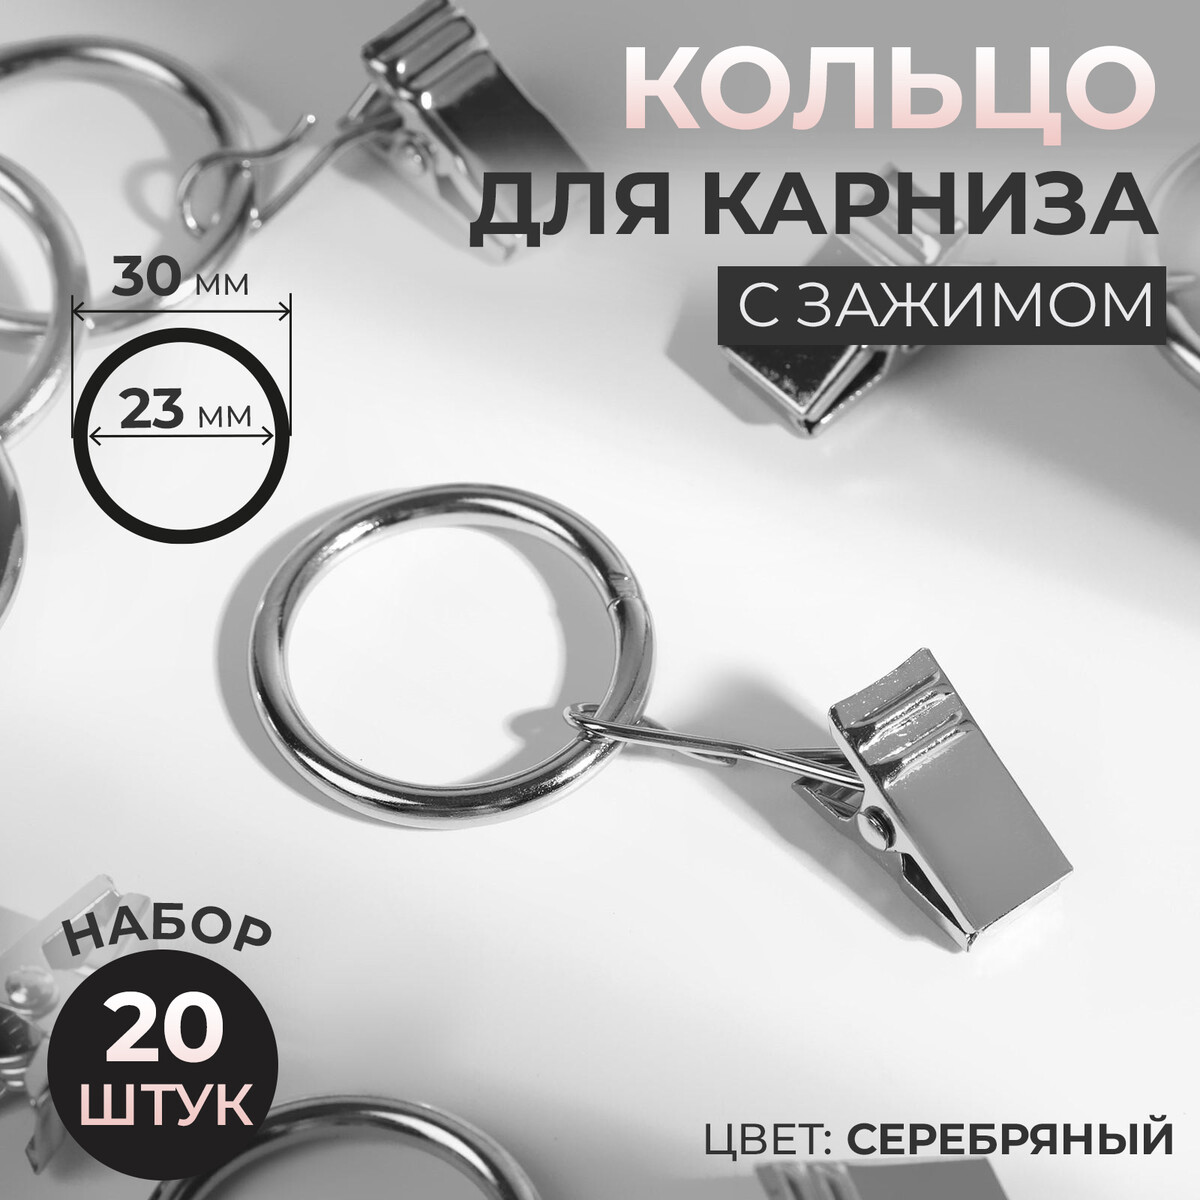 Кольцо для карниза, с зажимом, d = 23/30 мм, 20 шт, цвет серебряный кольцо для карниза d 40 50 мм 10 шт серебряный